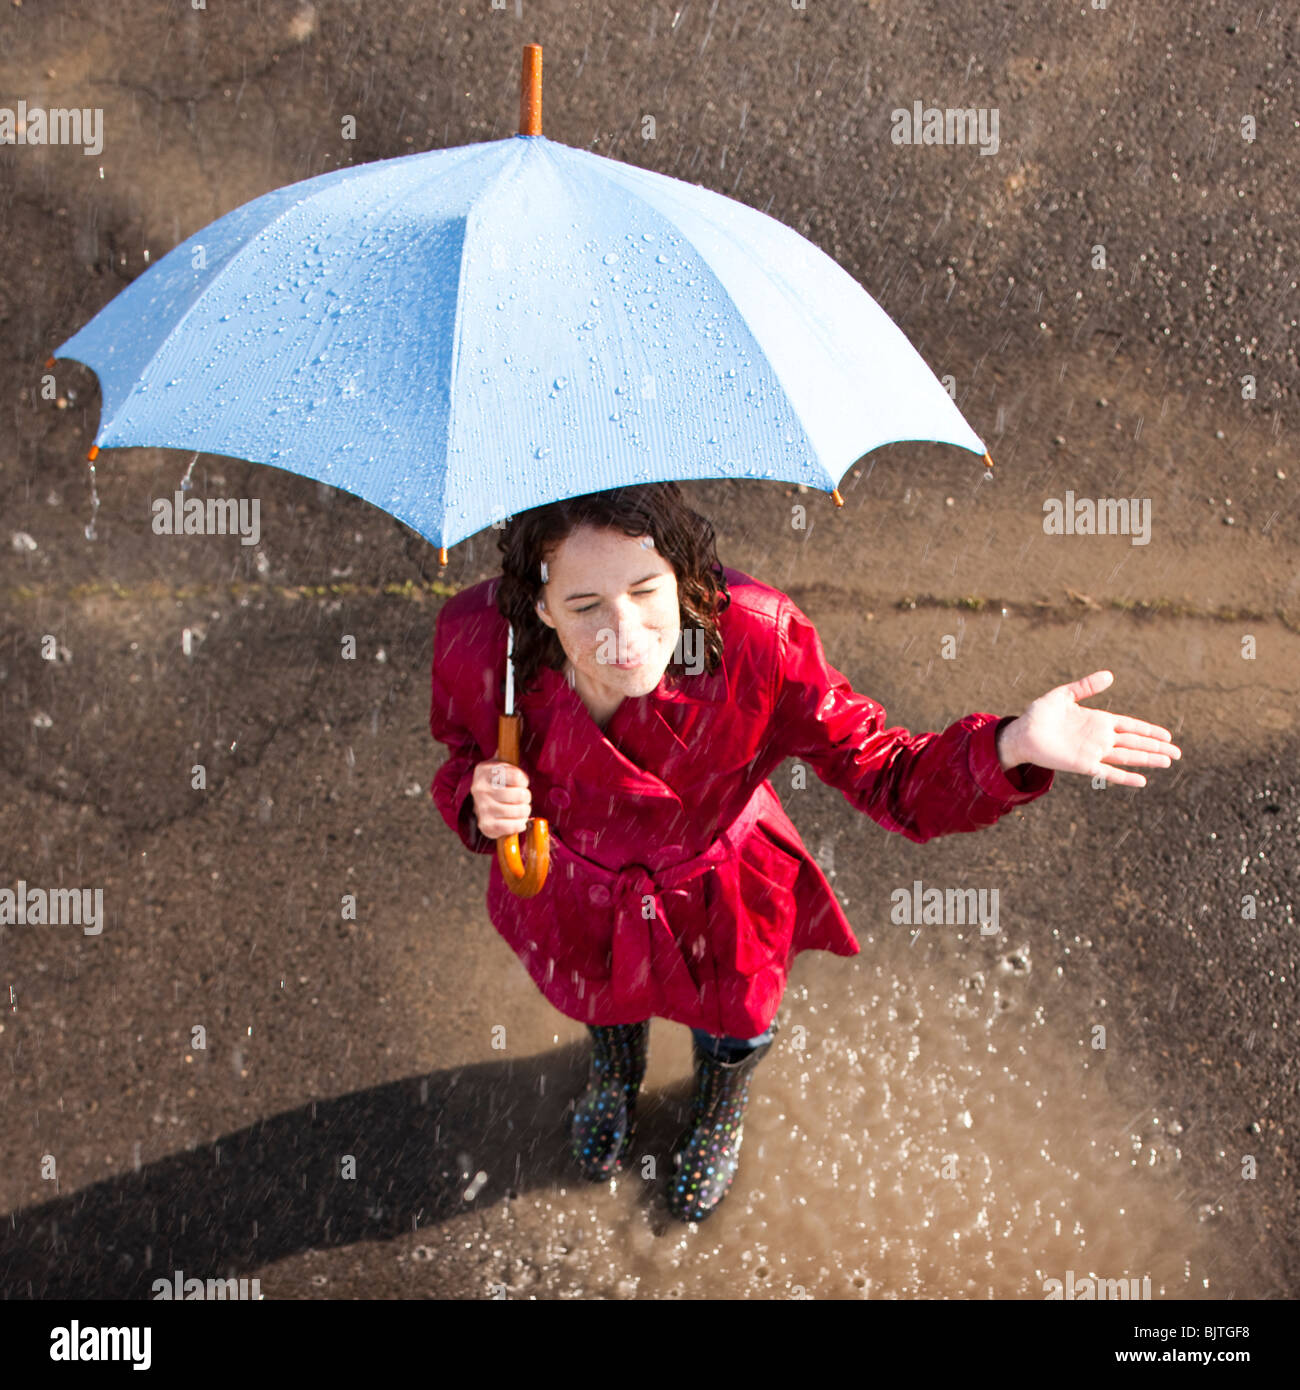 Jeune femme debout dans la pluie holding umbrella Banque D'Images